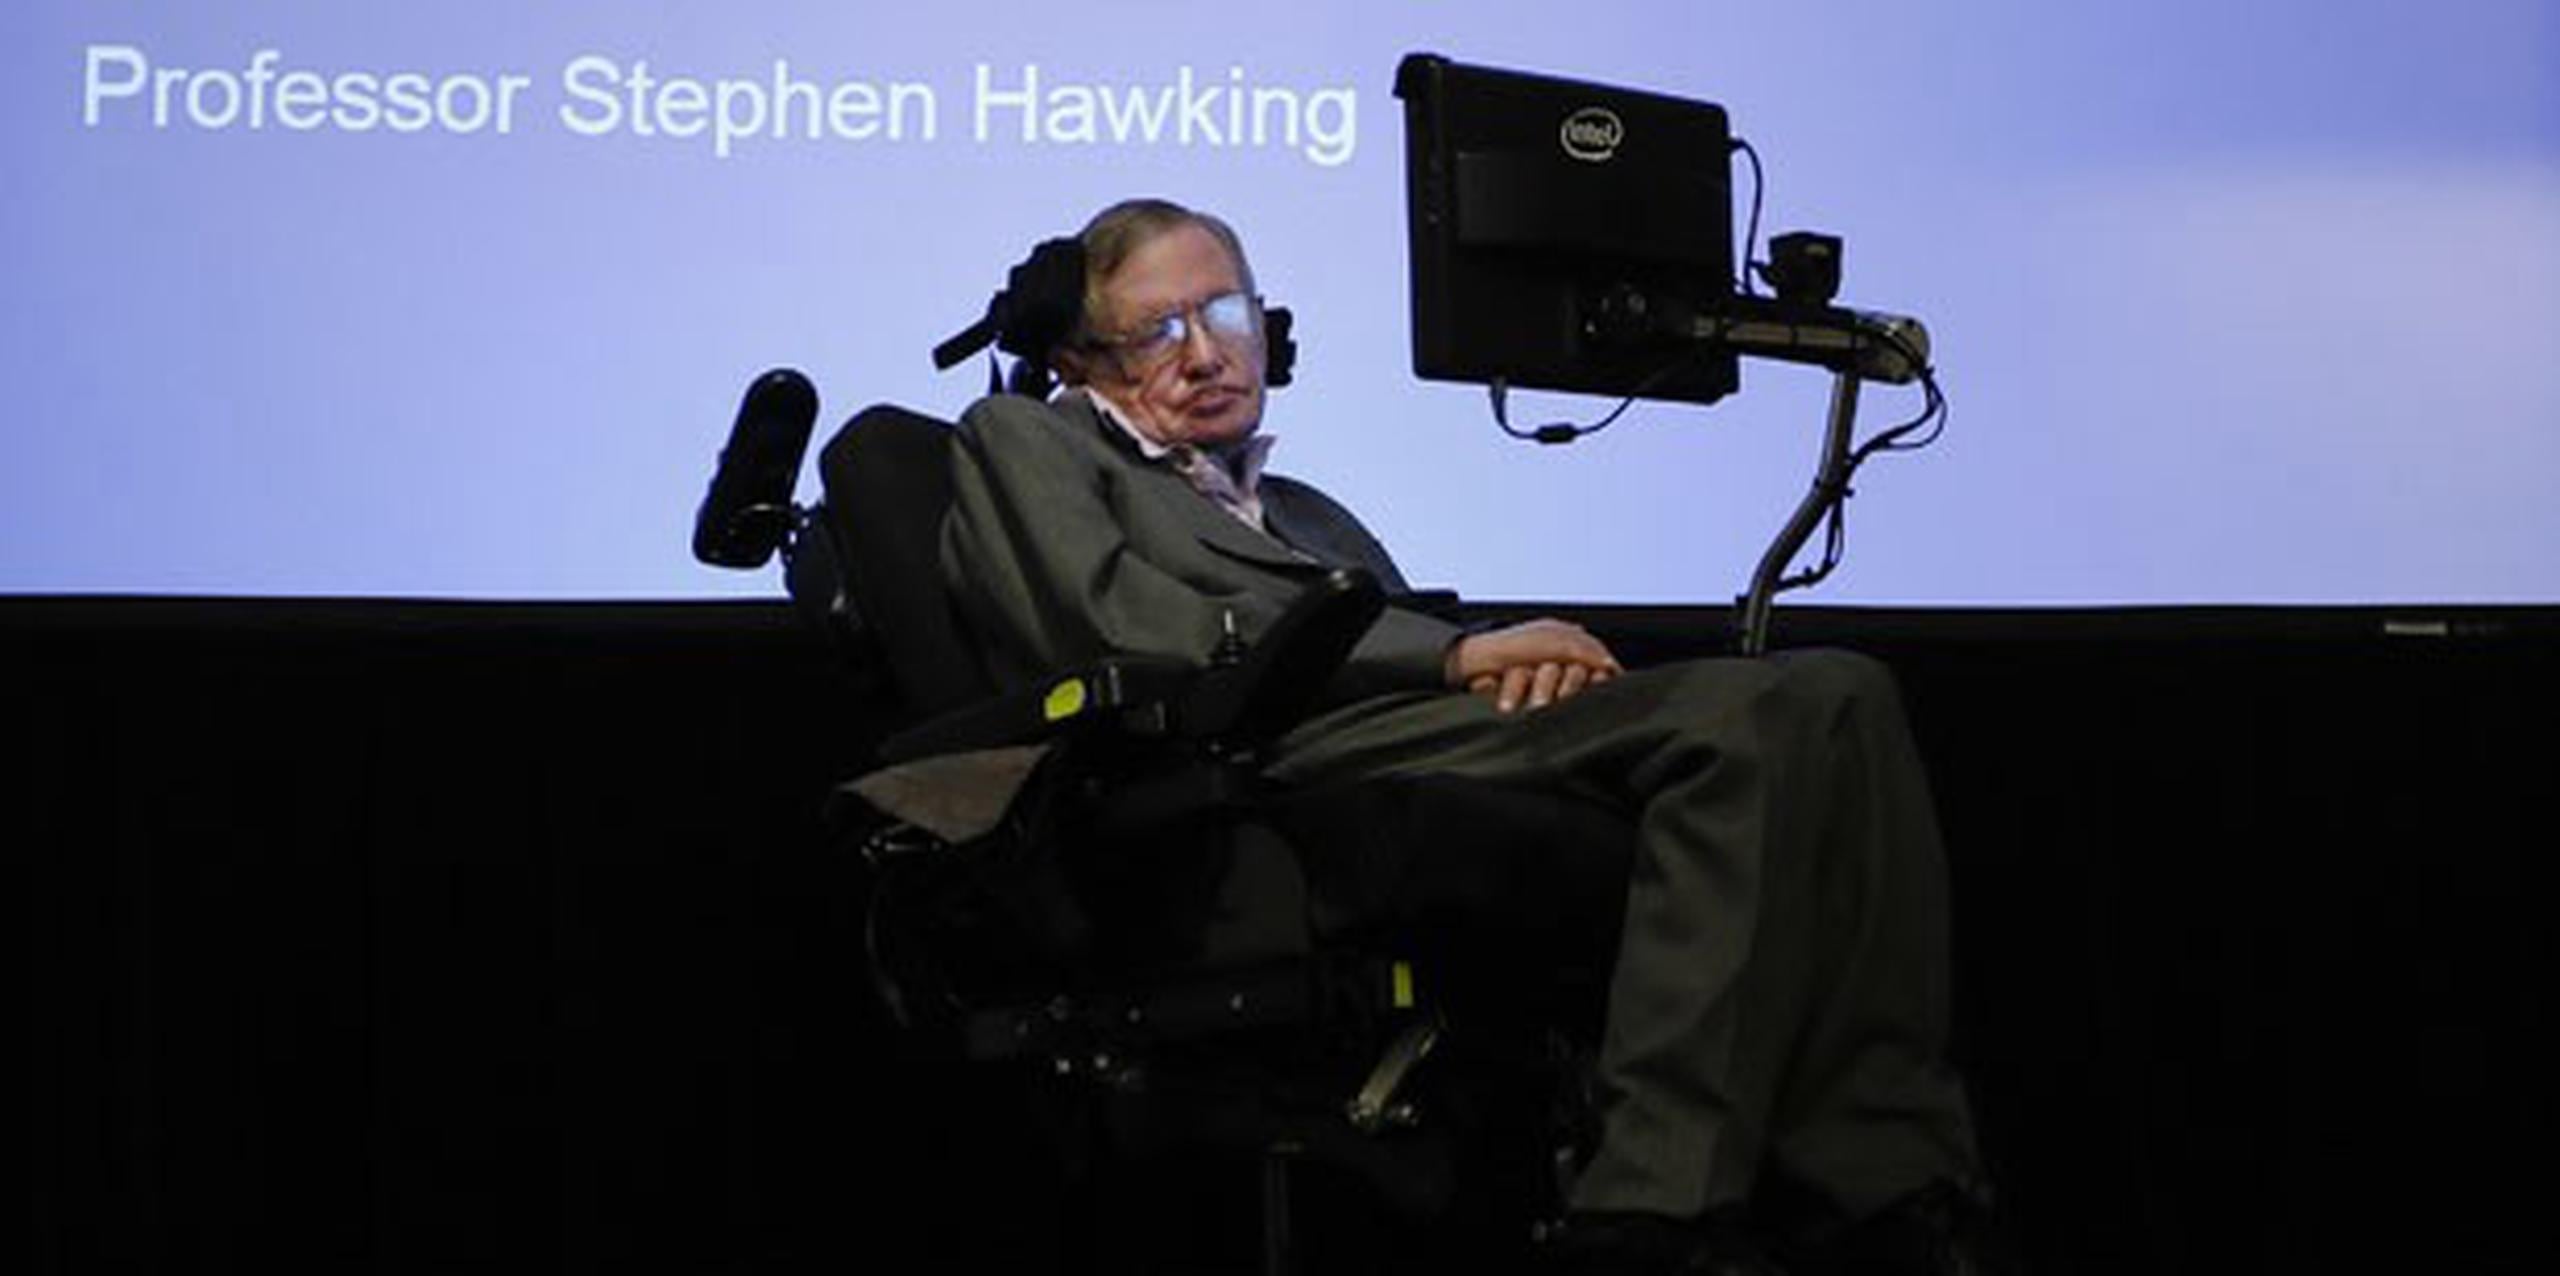 "Creo que mi silla de ruedas y mi voz robótica encajarían en ese papel", dijo Stephen Hawking.(AP Photo/Kirsty Wigglesworth)